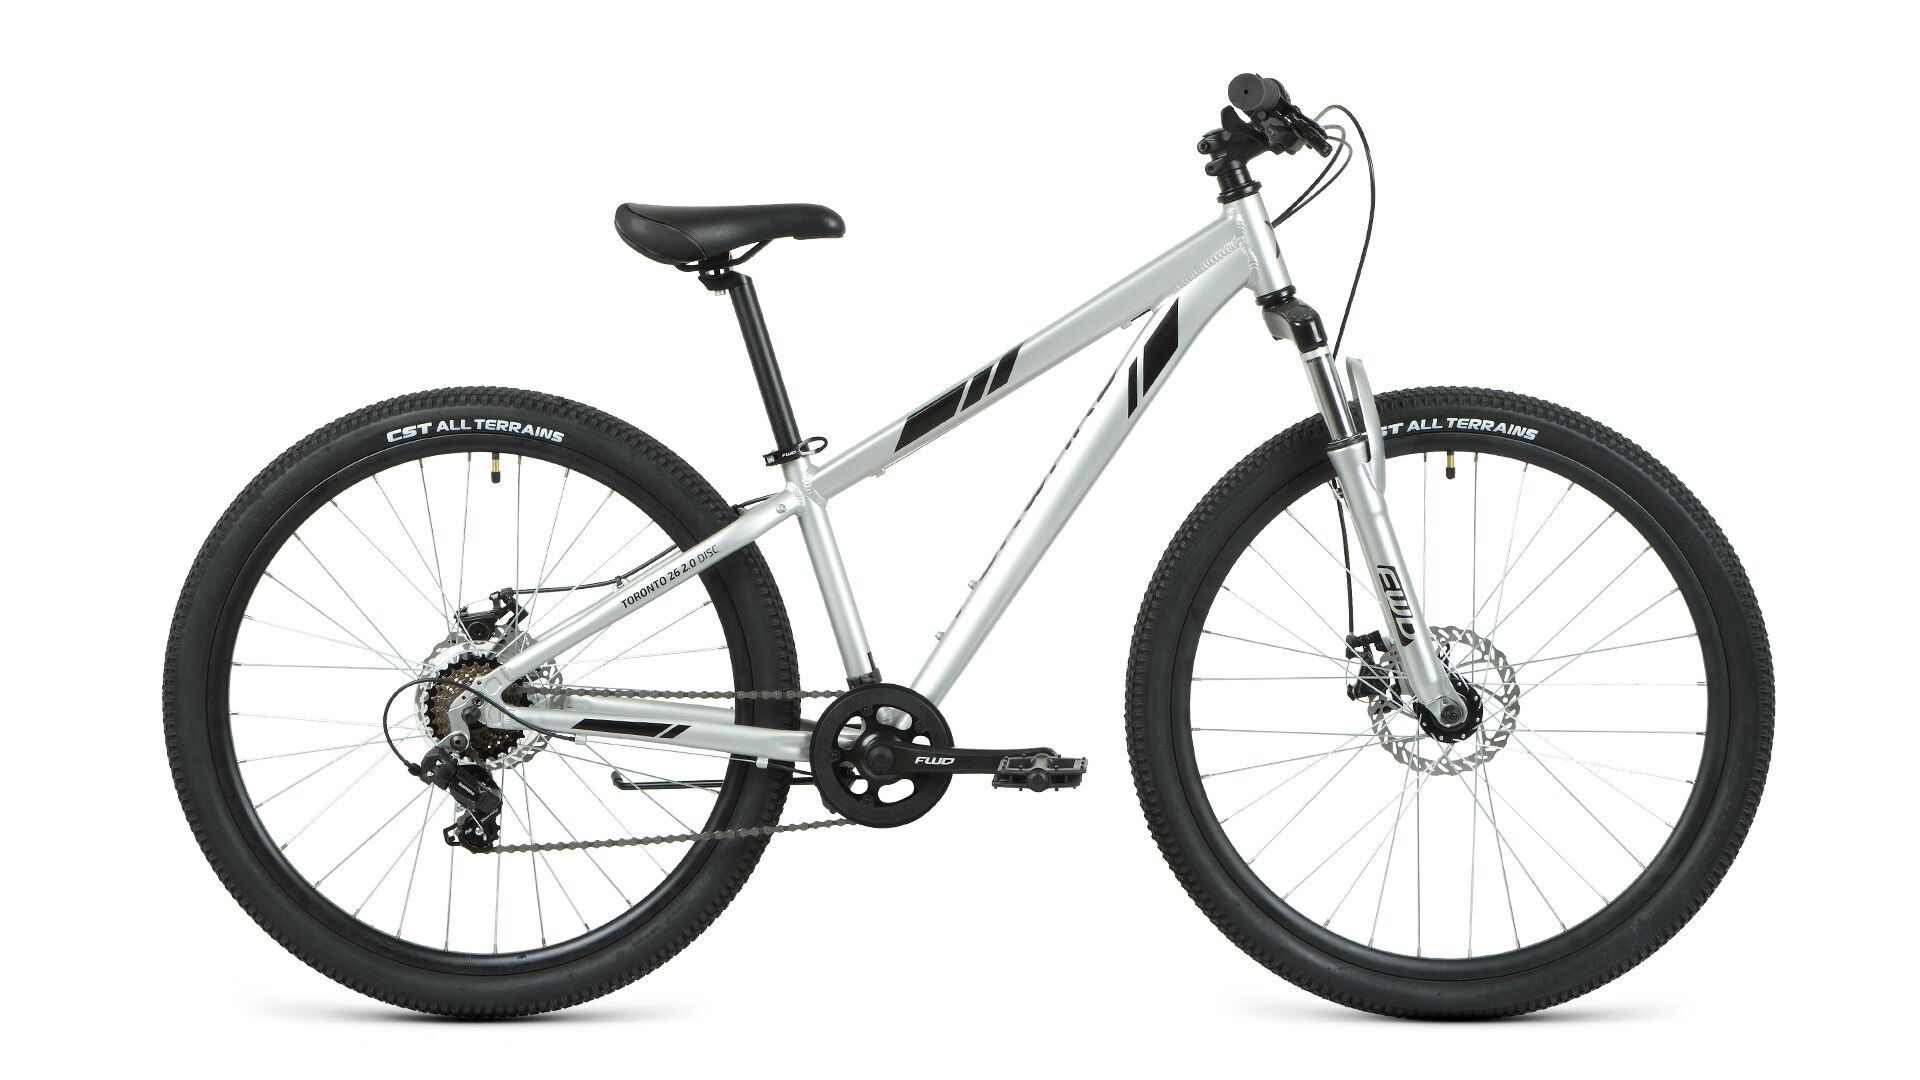 Фото выбрать и купить велосипед forward toronto 26 2.2 disc (2021) серебристый / черный, размер 13" велосипеды с доставкой, в магазине или со склада в СПб - большой выбор для подростка, велосипед forward toronto 26 2.2 disc (2021) серебристый / черный, размер 13" велосипеды в наличии - интернет-магазин Мастерская Тимура